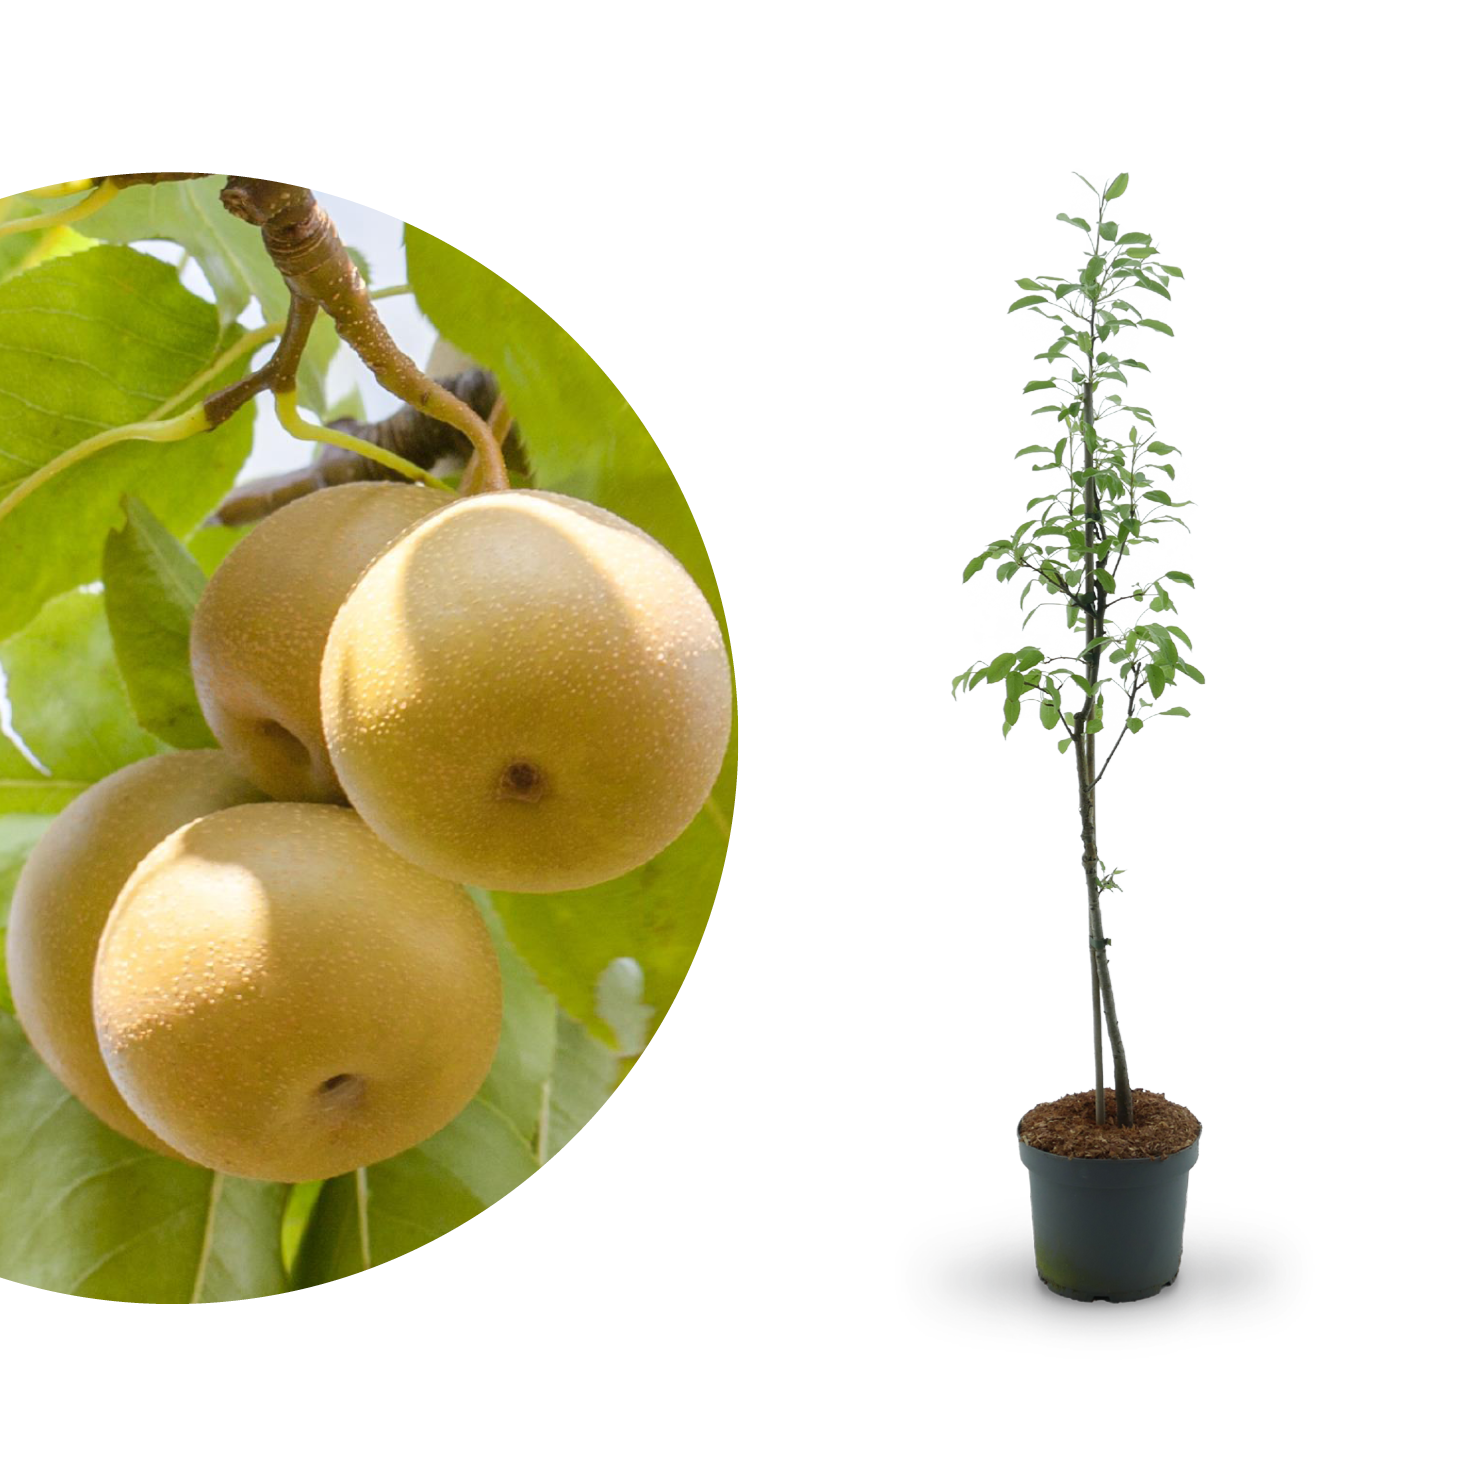 & Nashi-Birne: Sorten, Pflanzen - Vermehren Plantura